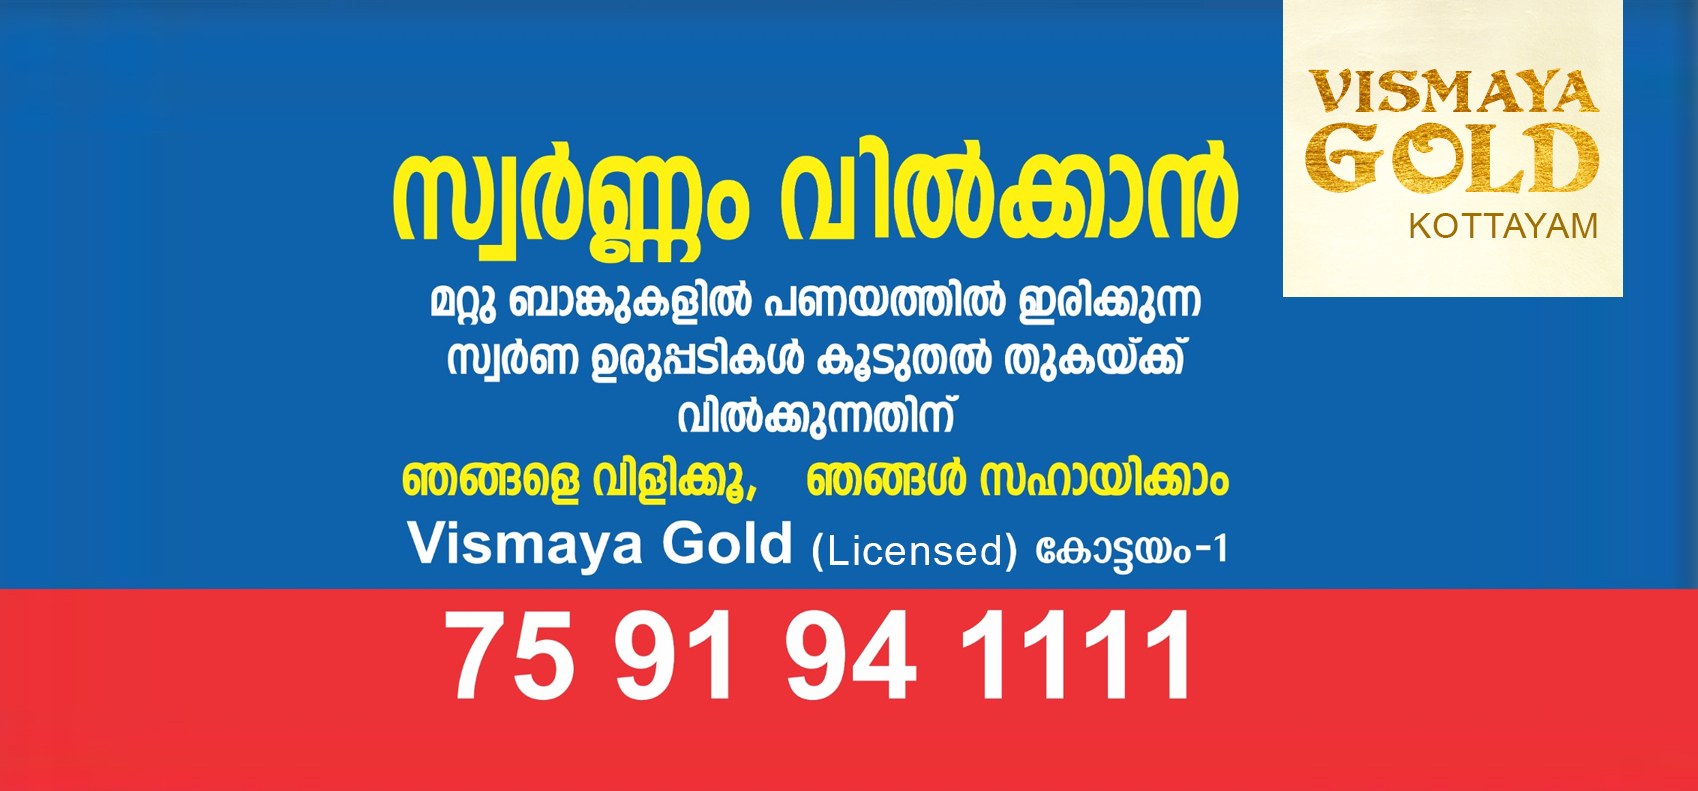 Gold Price in Kottayam